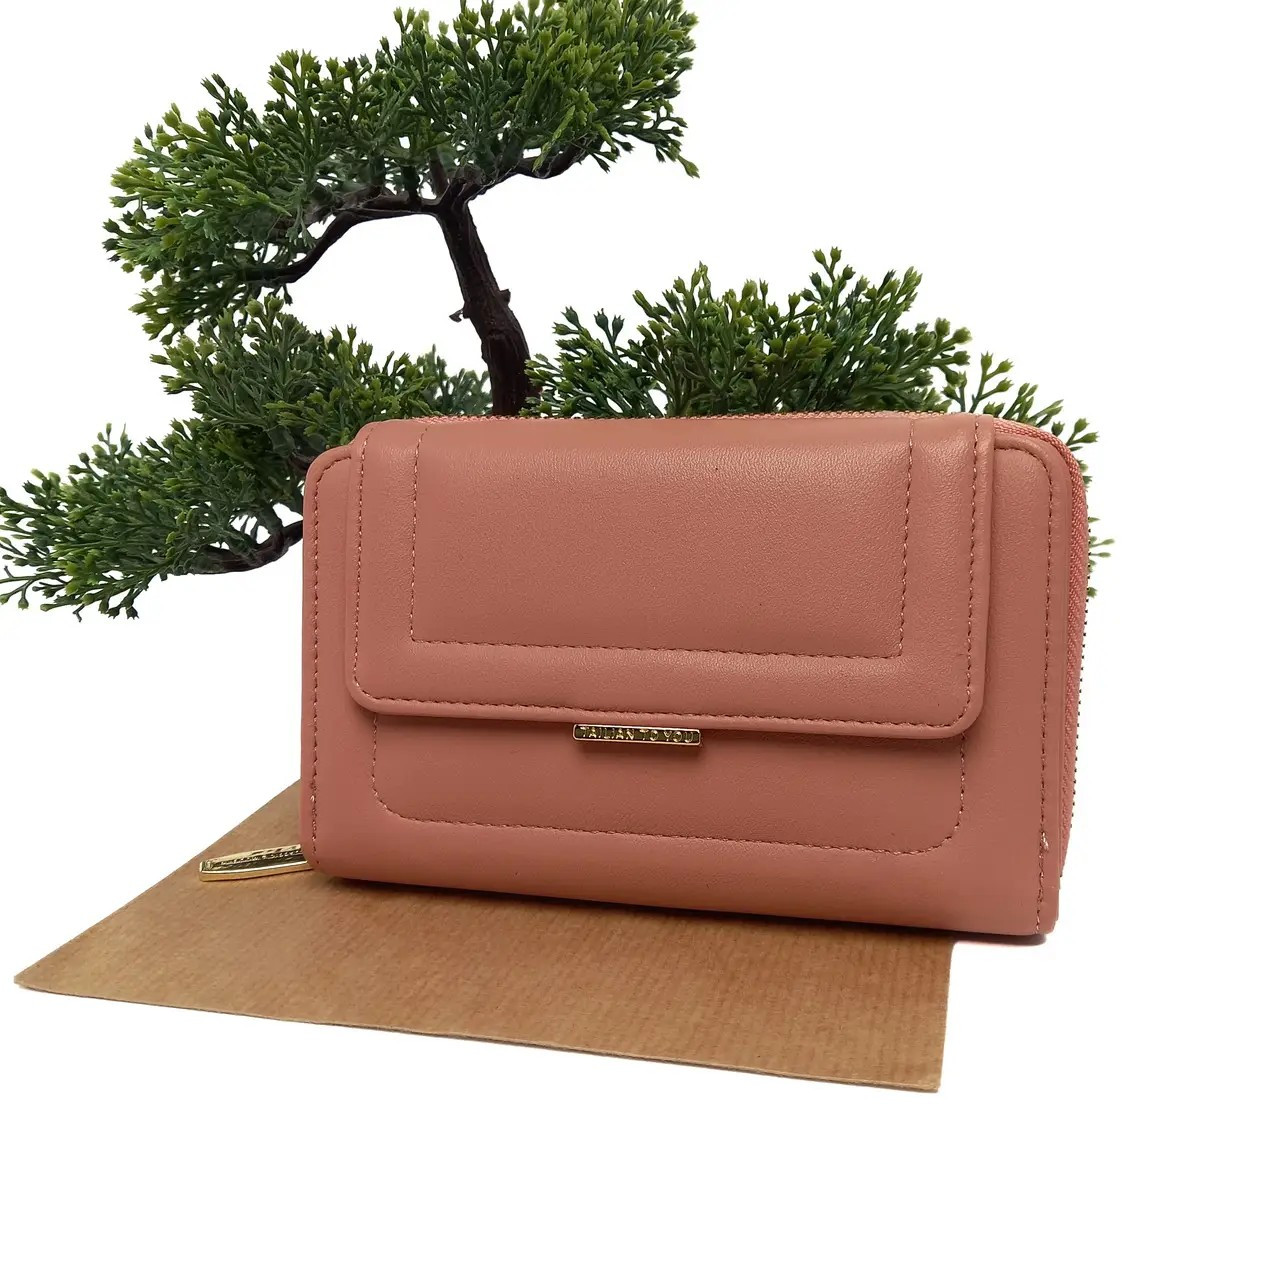 Жіночий компактний рожевий гаманець штучна шкіра Арт.T2701-021 pink (54)